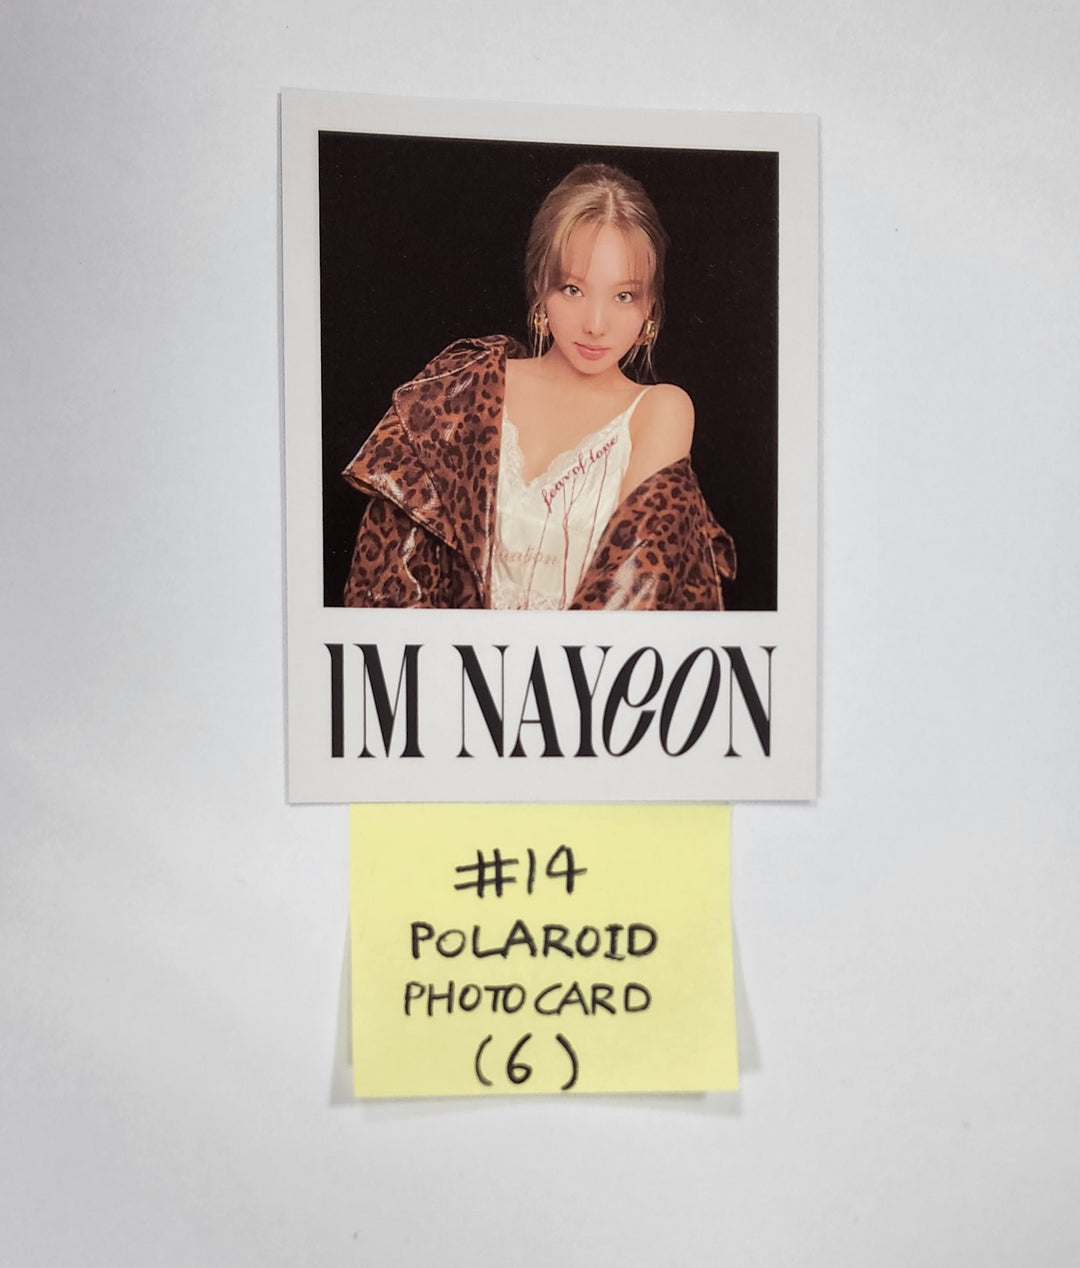 ナヨン「IM NAYEON」 - 公式フォトカード、名刺、ポラロイドフォトカード、ポストカード (22.06.30更新)